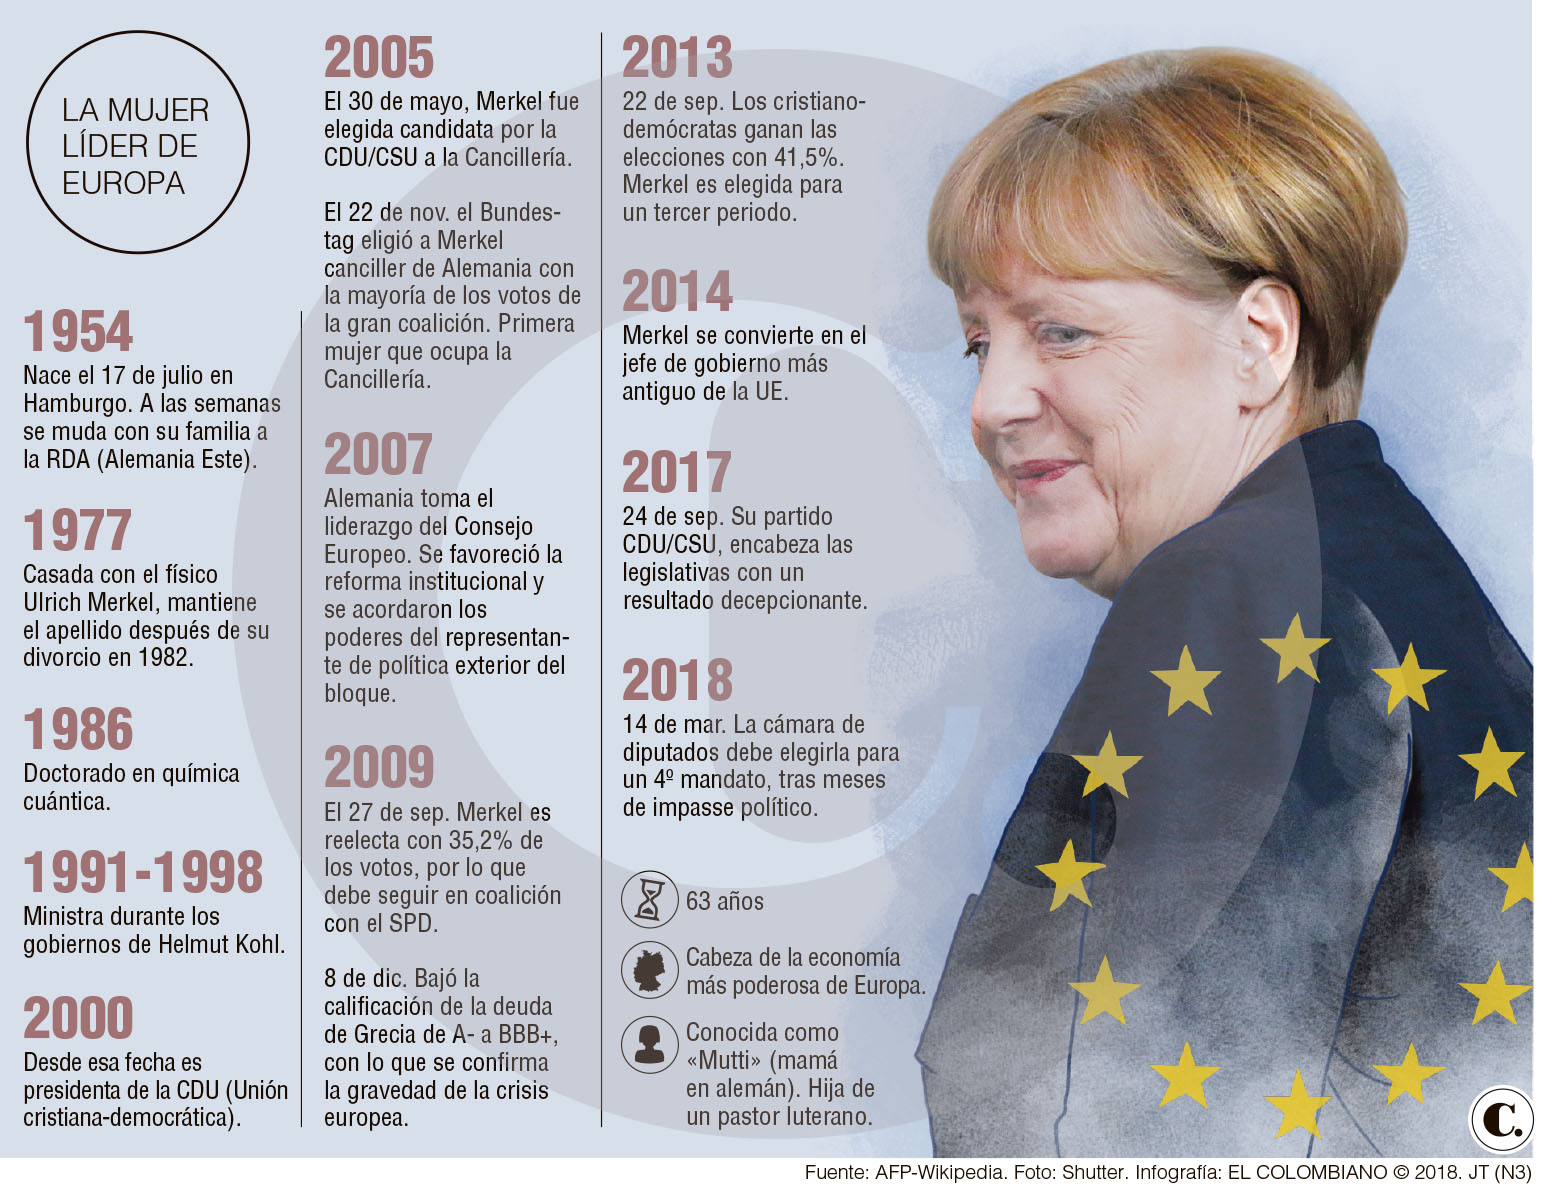 Merkel asume el mandato más difícil de su carrera 